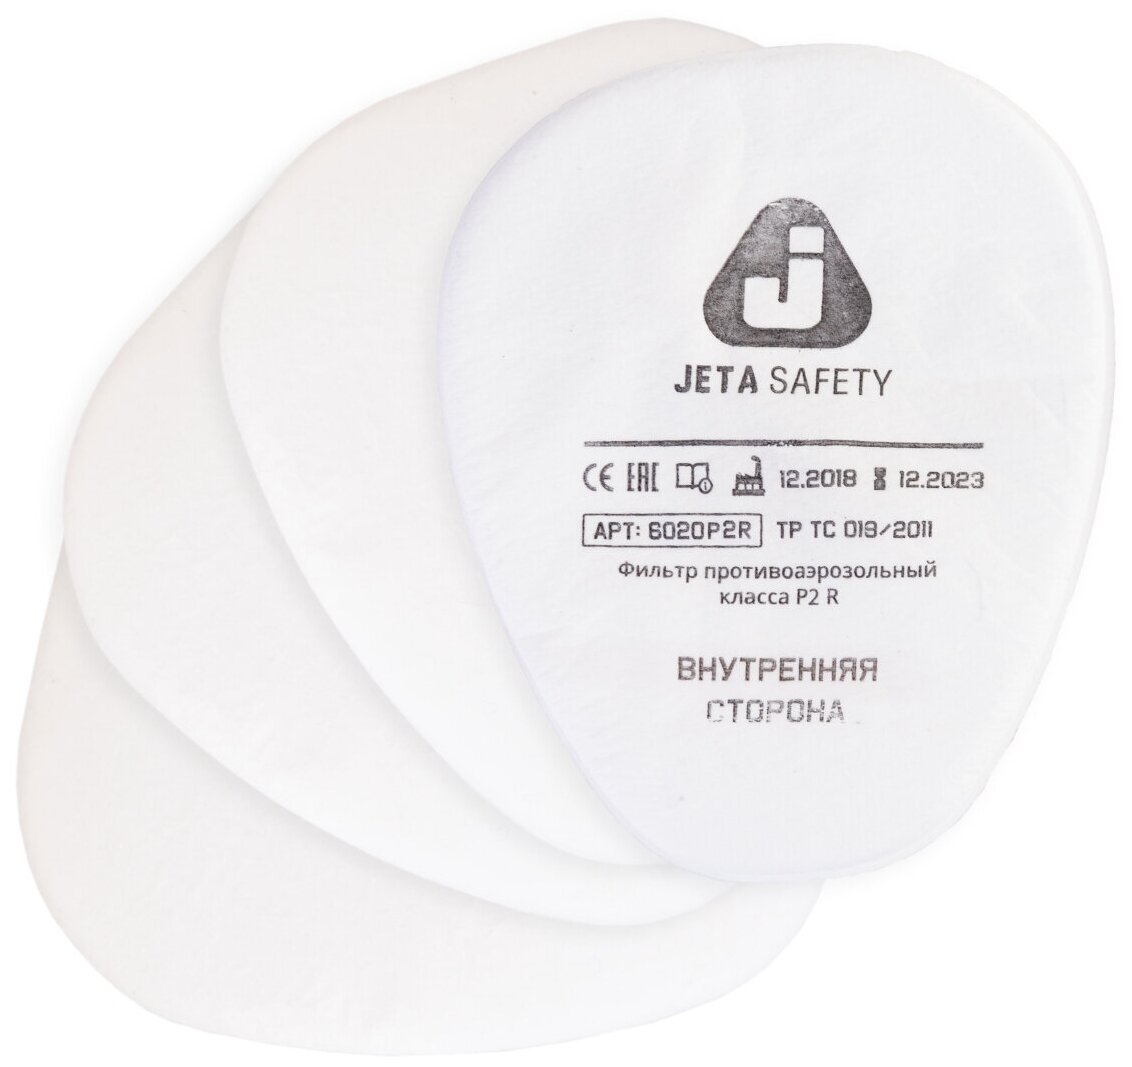 Предфильтр от пыли и аэрозолей 6020P2R (упак.4 шт.), Jeta Safety